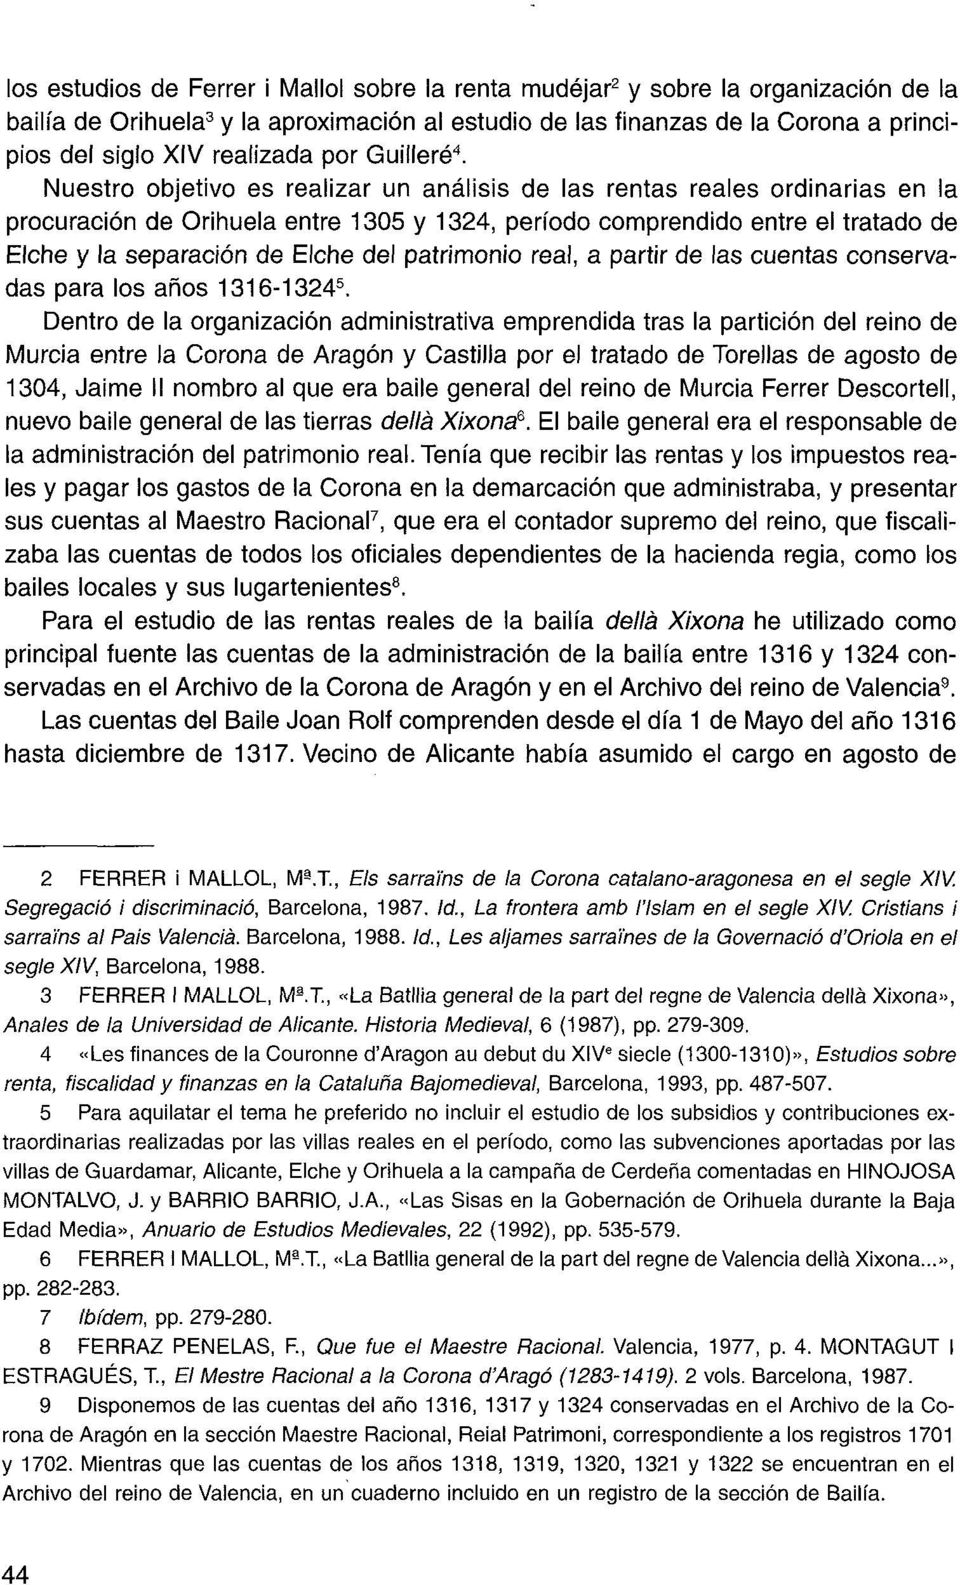 Nuestro objetivo es realizar un análisis de las rentas reales ordinarias en la procuración de Orihuela entre 1305 y 1324, período comprendido entre el tratado de Elche y la separación de Elche del